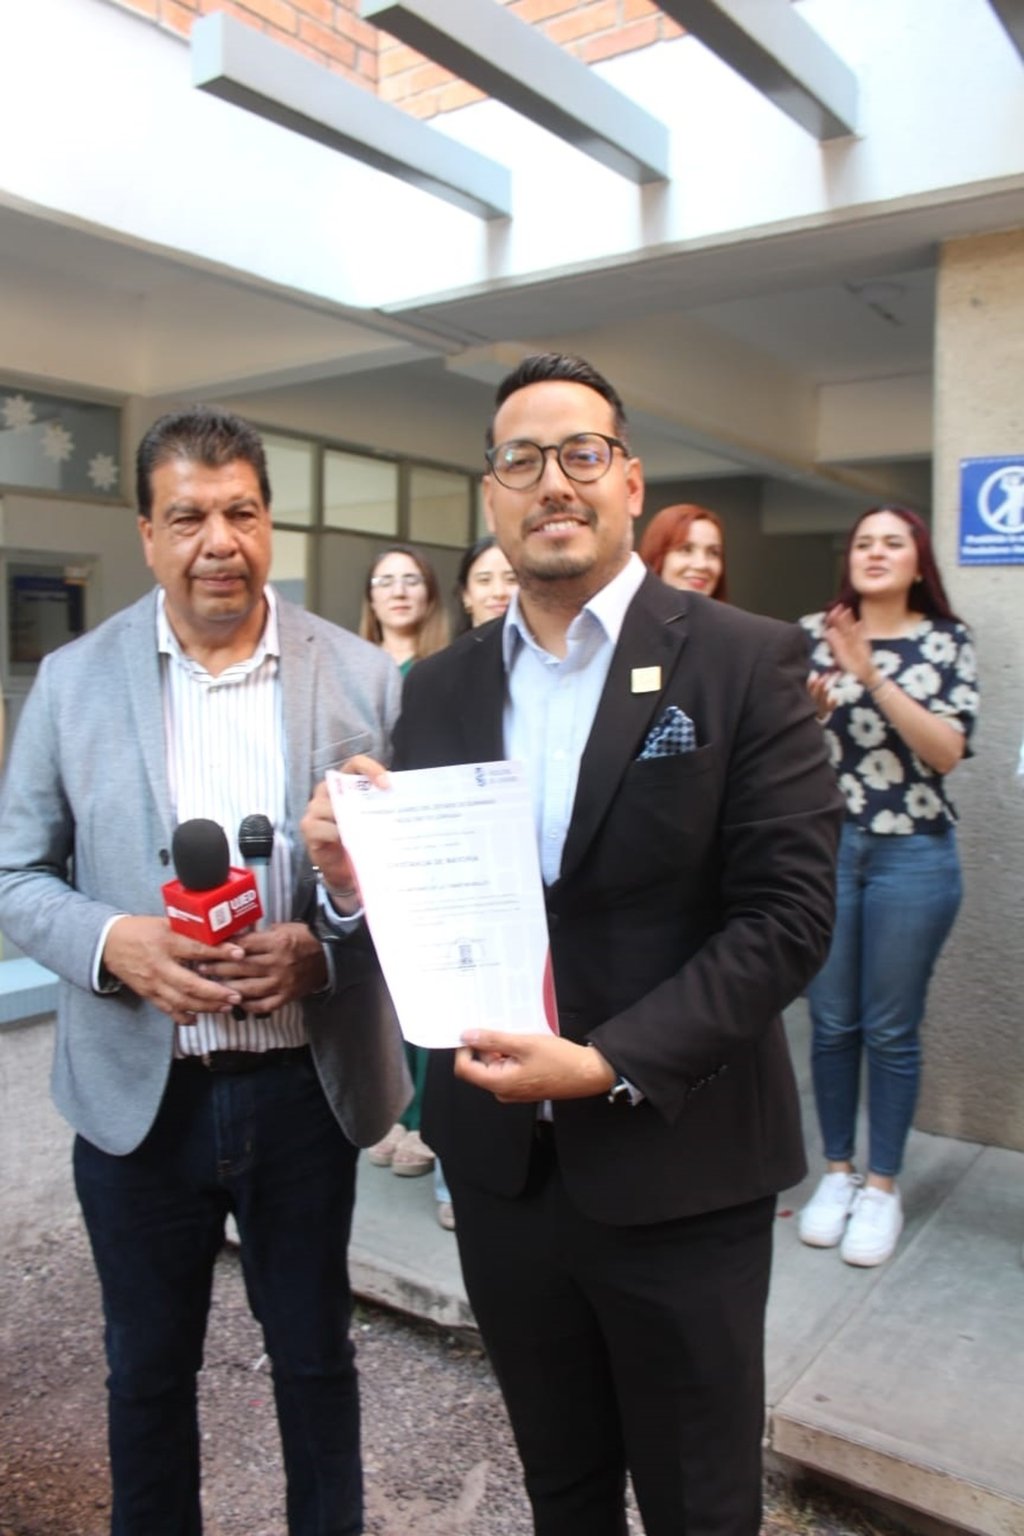  José Antonio de la Torre Morales fue electo como nuevo director de la Facultad de Lenguas de la Universidad Juárez del Estado de Durango (UJED).